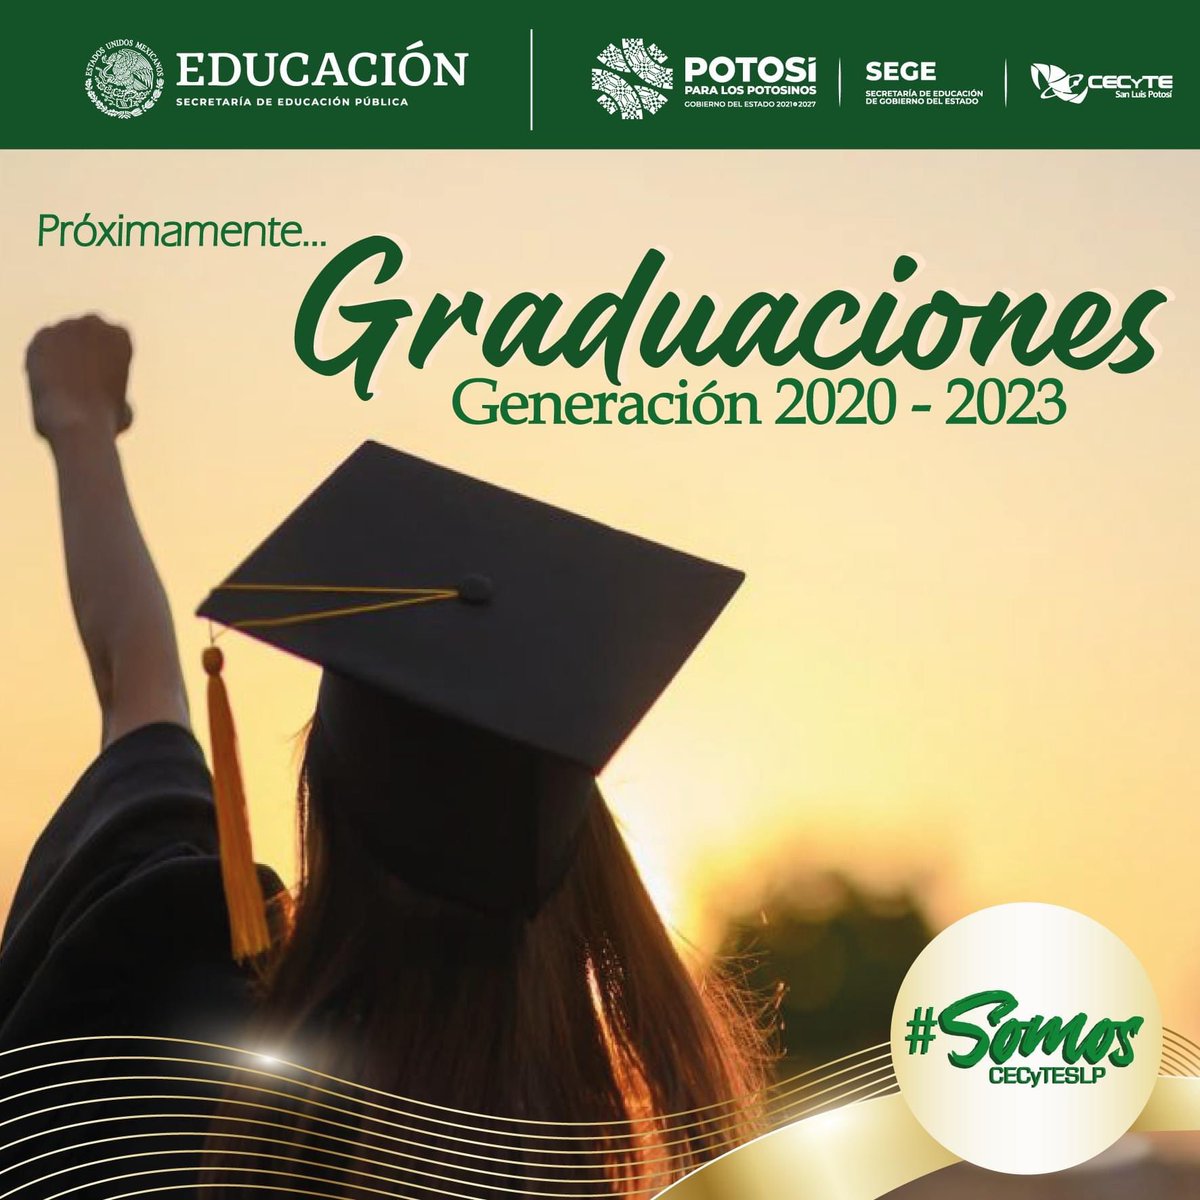 ¡Estamos próximos a iniciar con la temporada de Graduaciones de la Generación 2020 - 2023 de CECyTESLP y eso nos tiene muy emocionados!

#SomosCECyTE
#somoscecyteslp